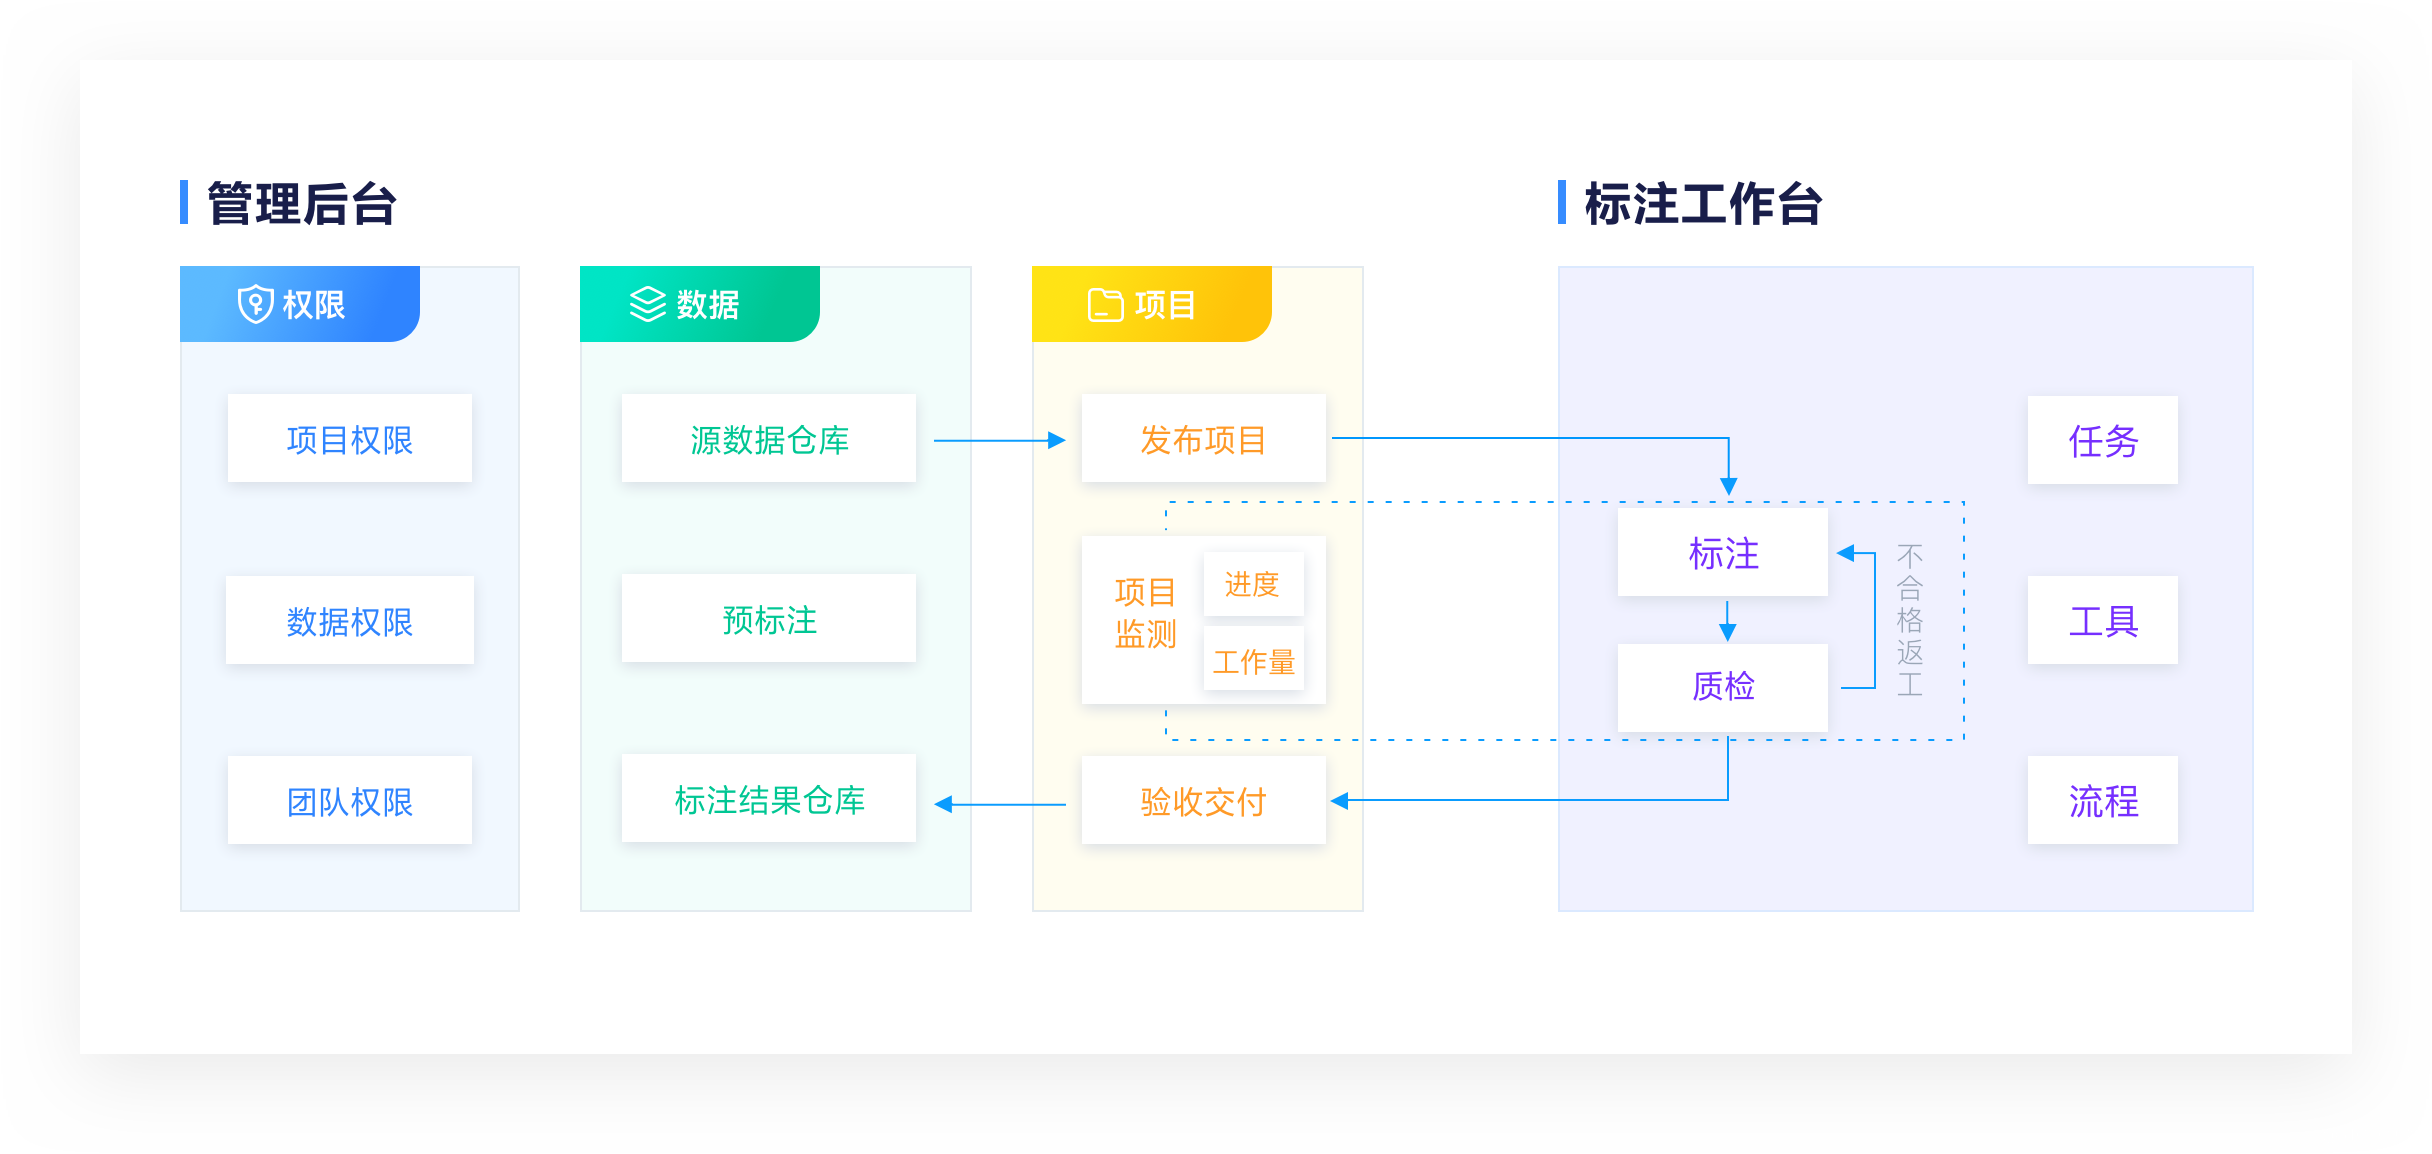 Jingdong тримаран новой усовершенствованной версии приватизации отмеченной линии на платформе --Easylabel!